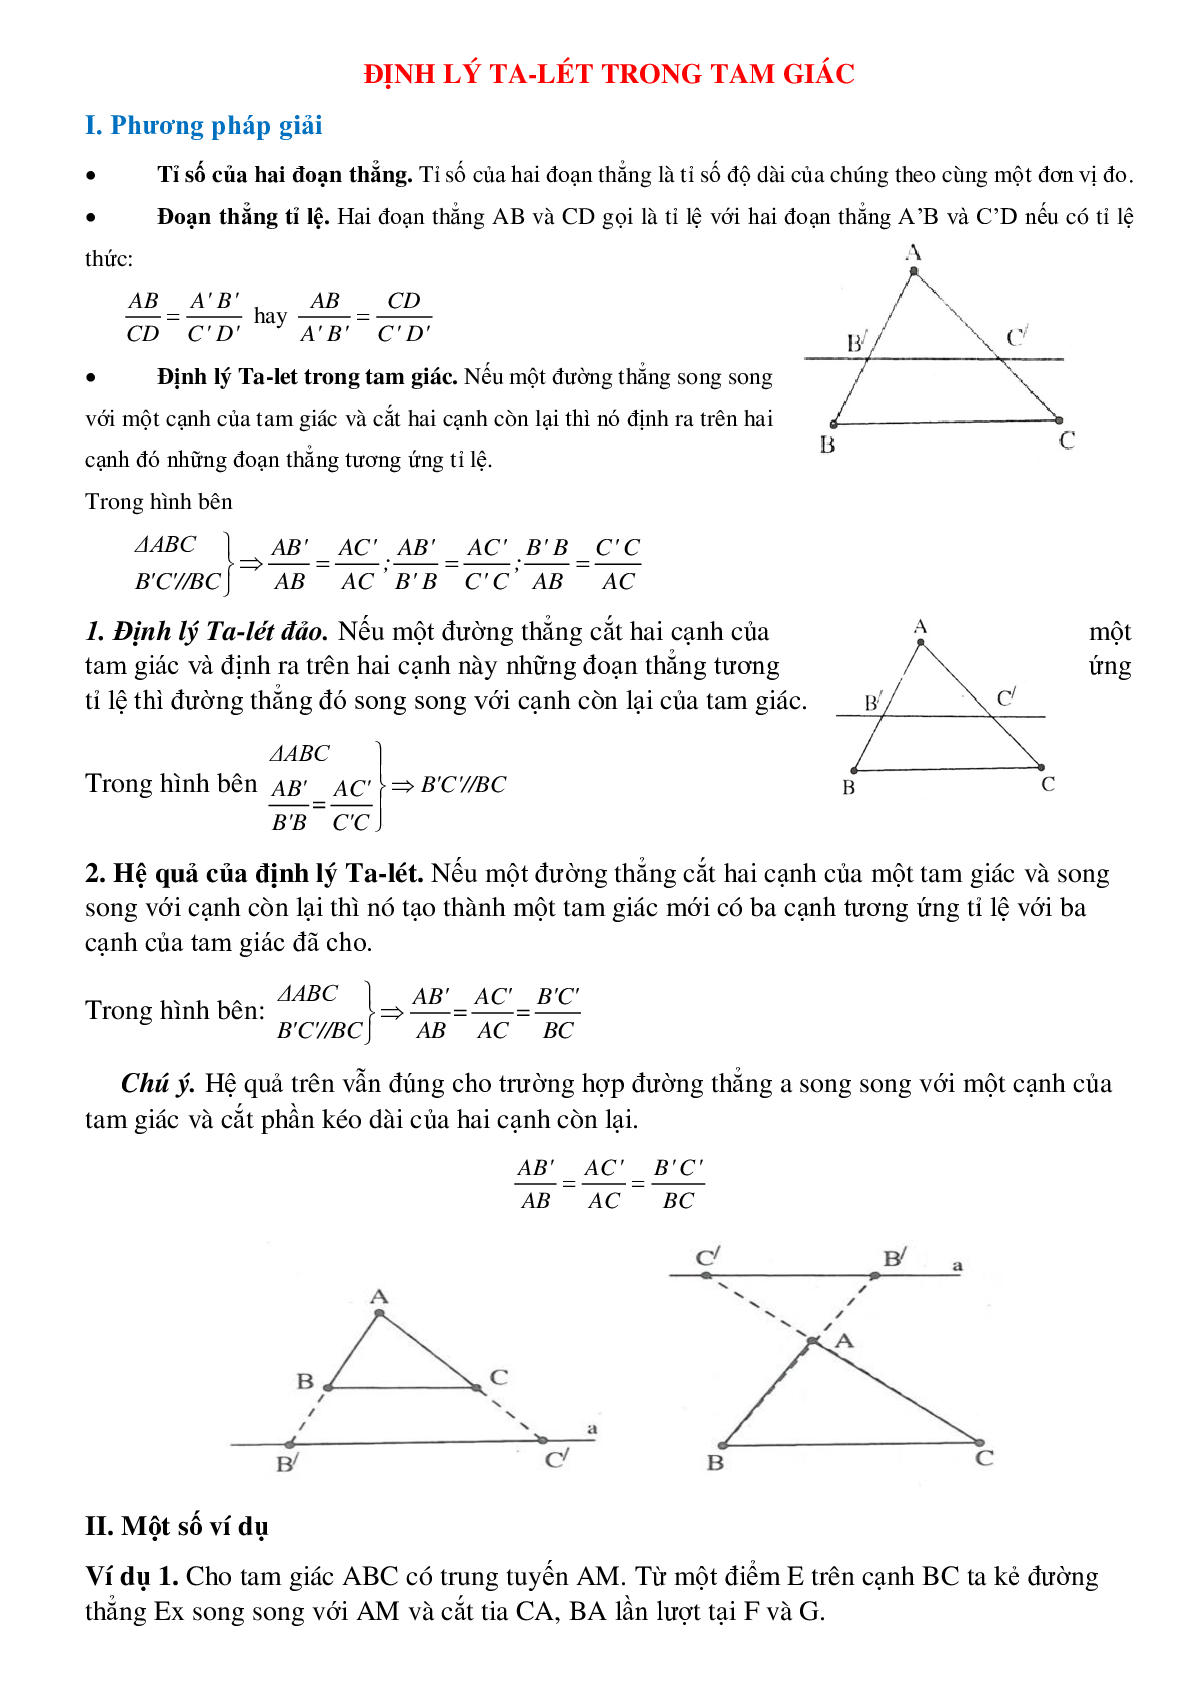 Định lý Ta-lét trong tam giác (trang 1)